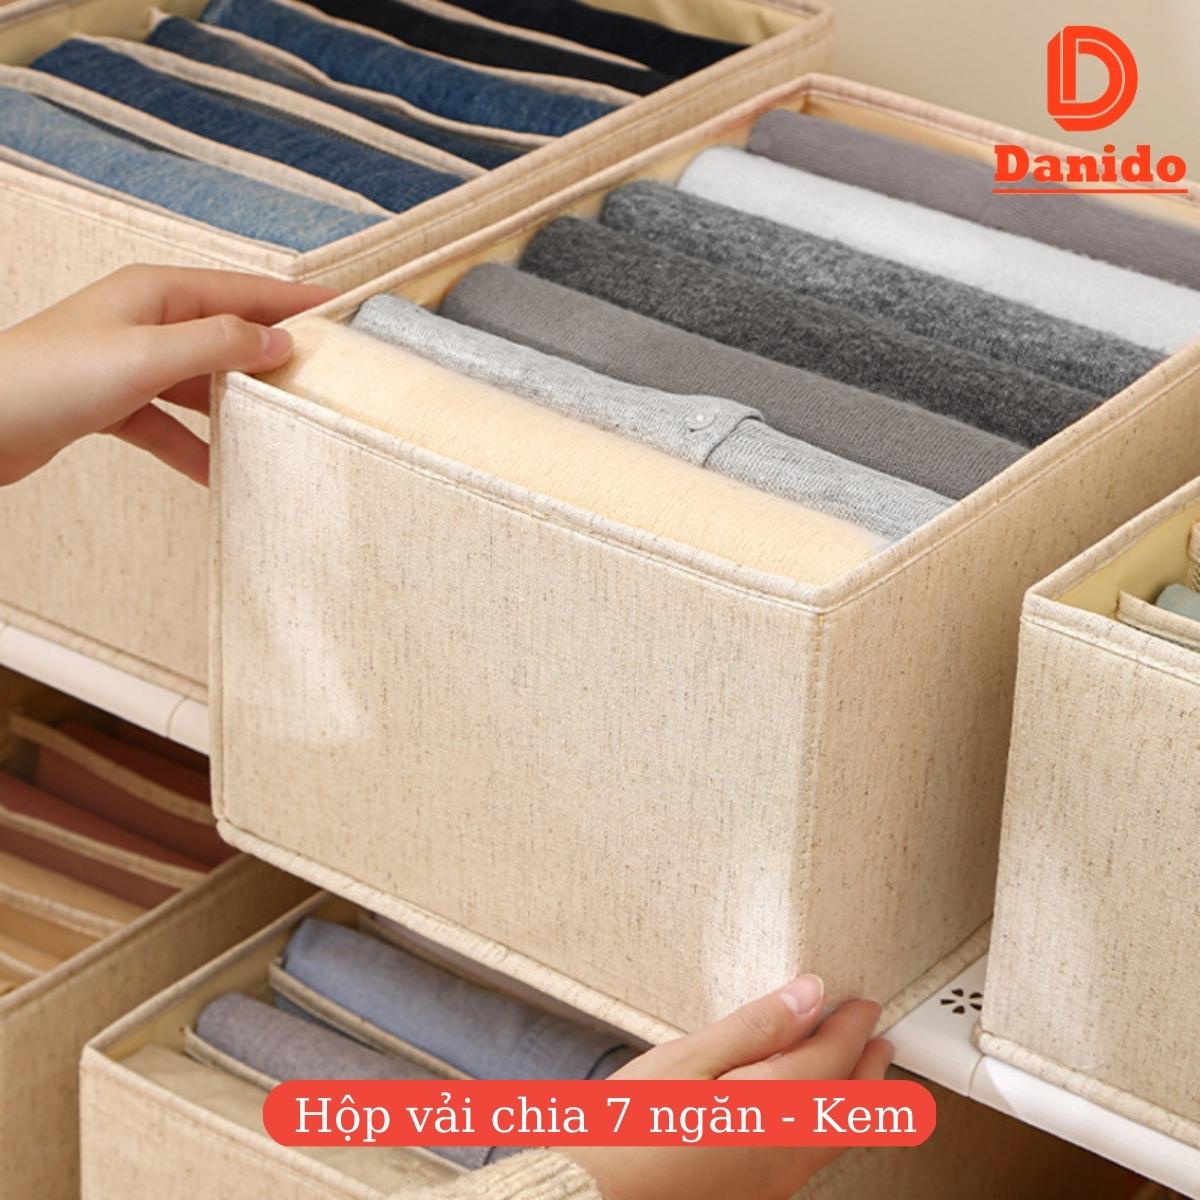 Hộp đựng quần áo chia 7 ngăn 9 ngăn 12 ngăn bằng vải không dệt tiện lợi chính hãng D Danido